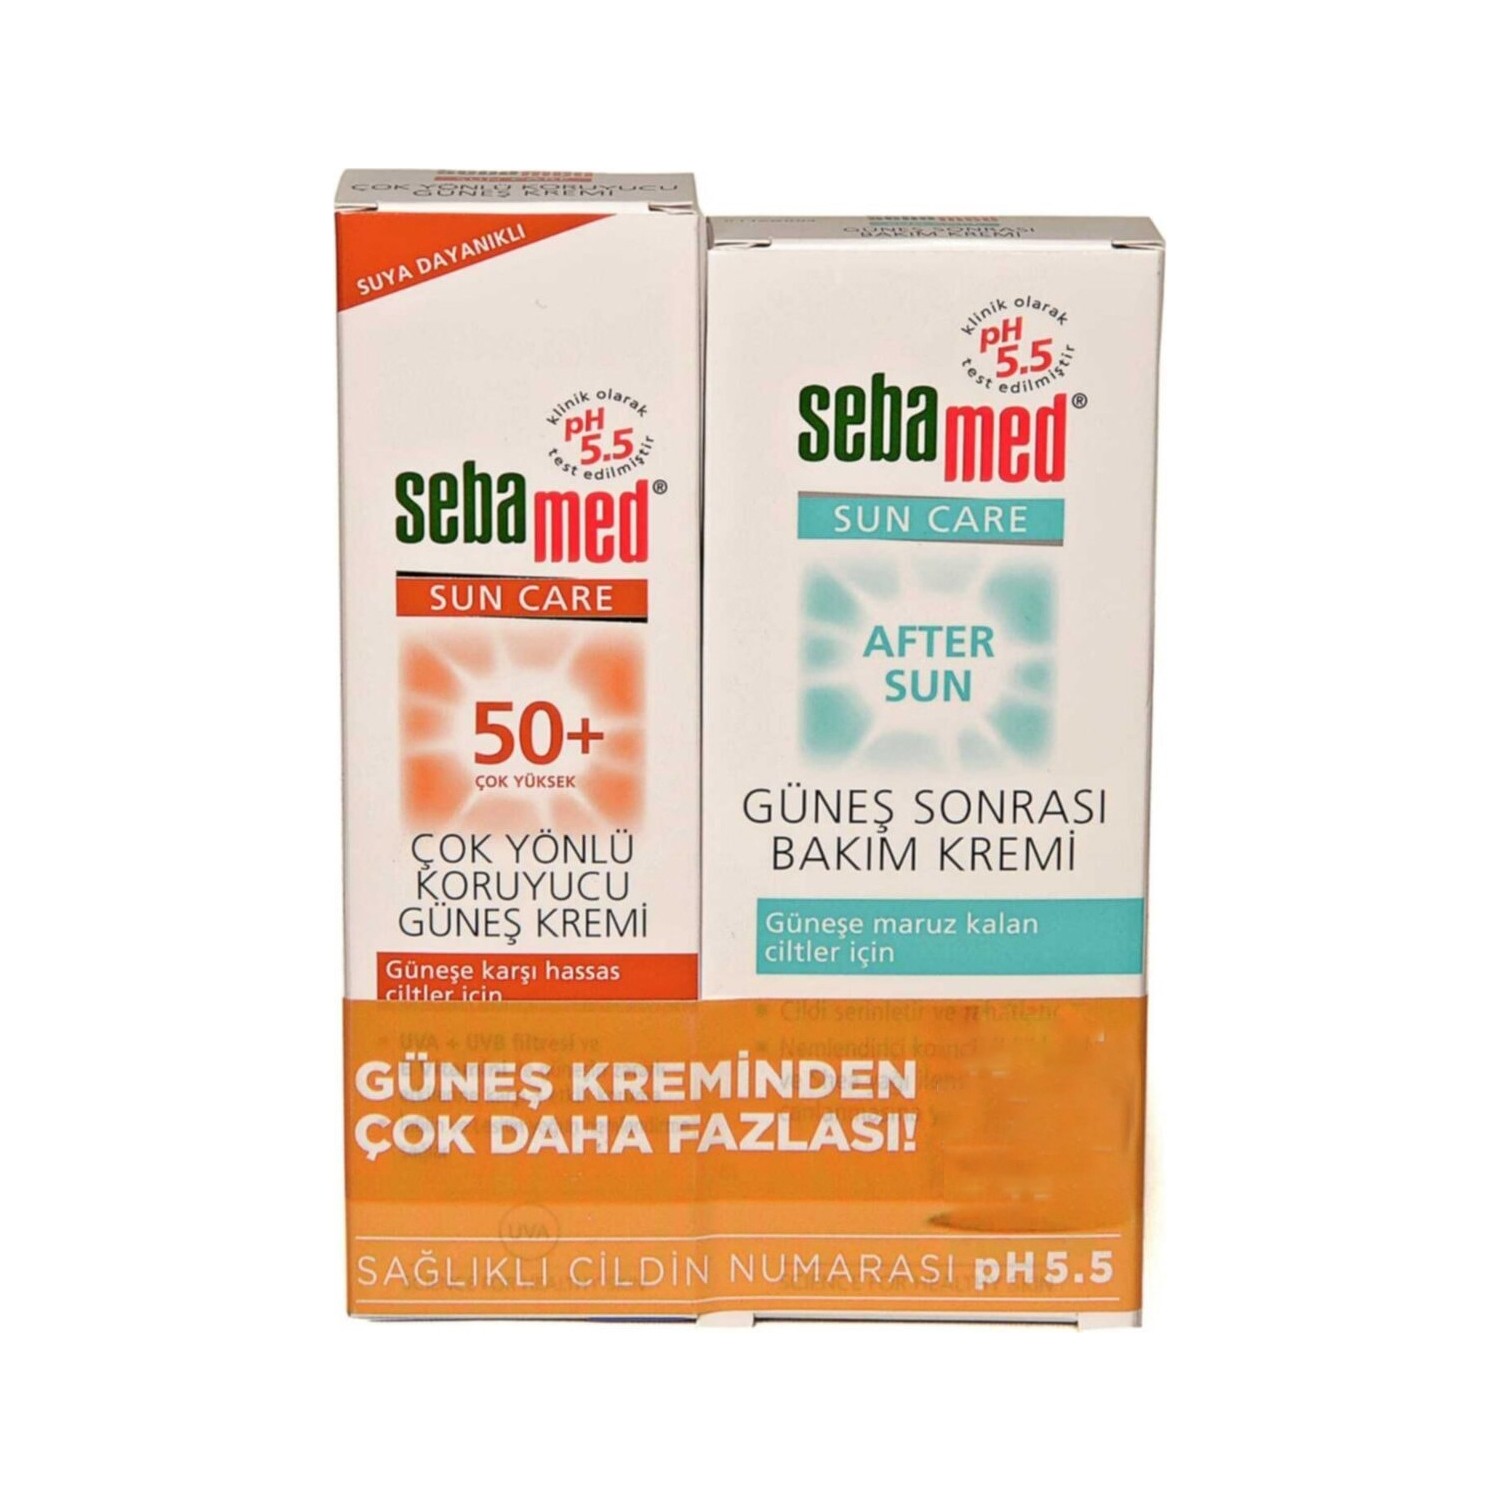 цена Солнцезащитный крем Sebamed Sun Care SPF 50+, 100 мл